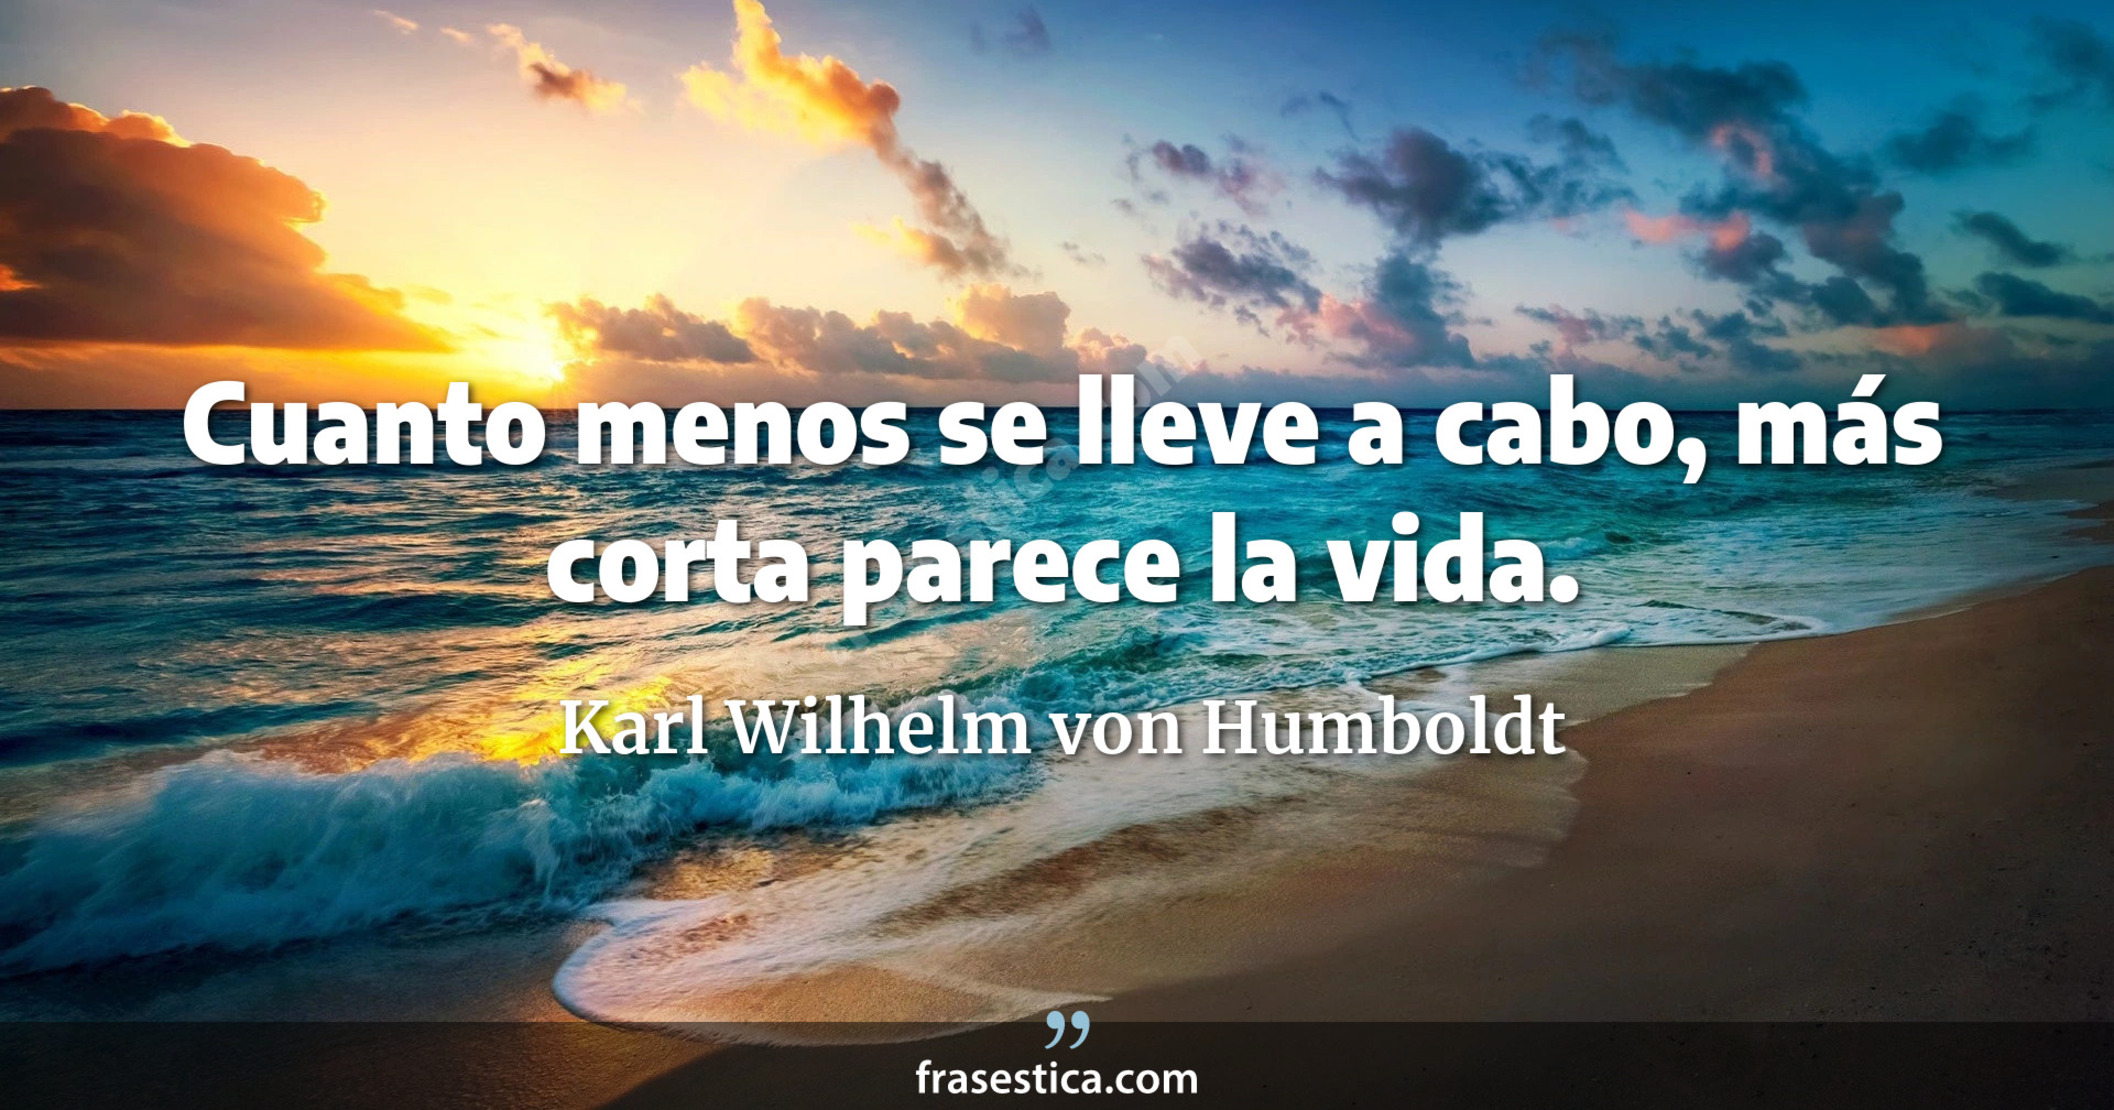 Cuanto menos se lleve a cabo, más corta parece la vida. - Karl Wilhelm von Humboldt